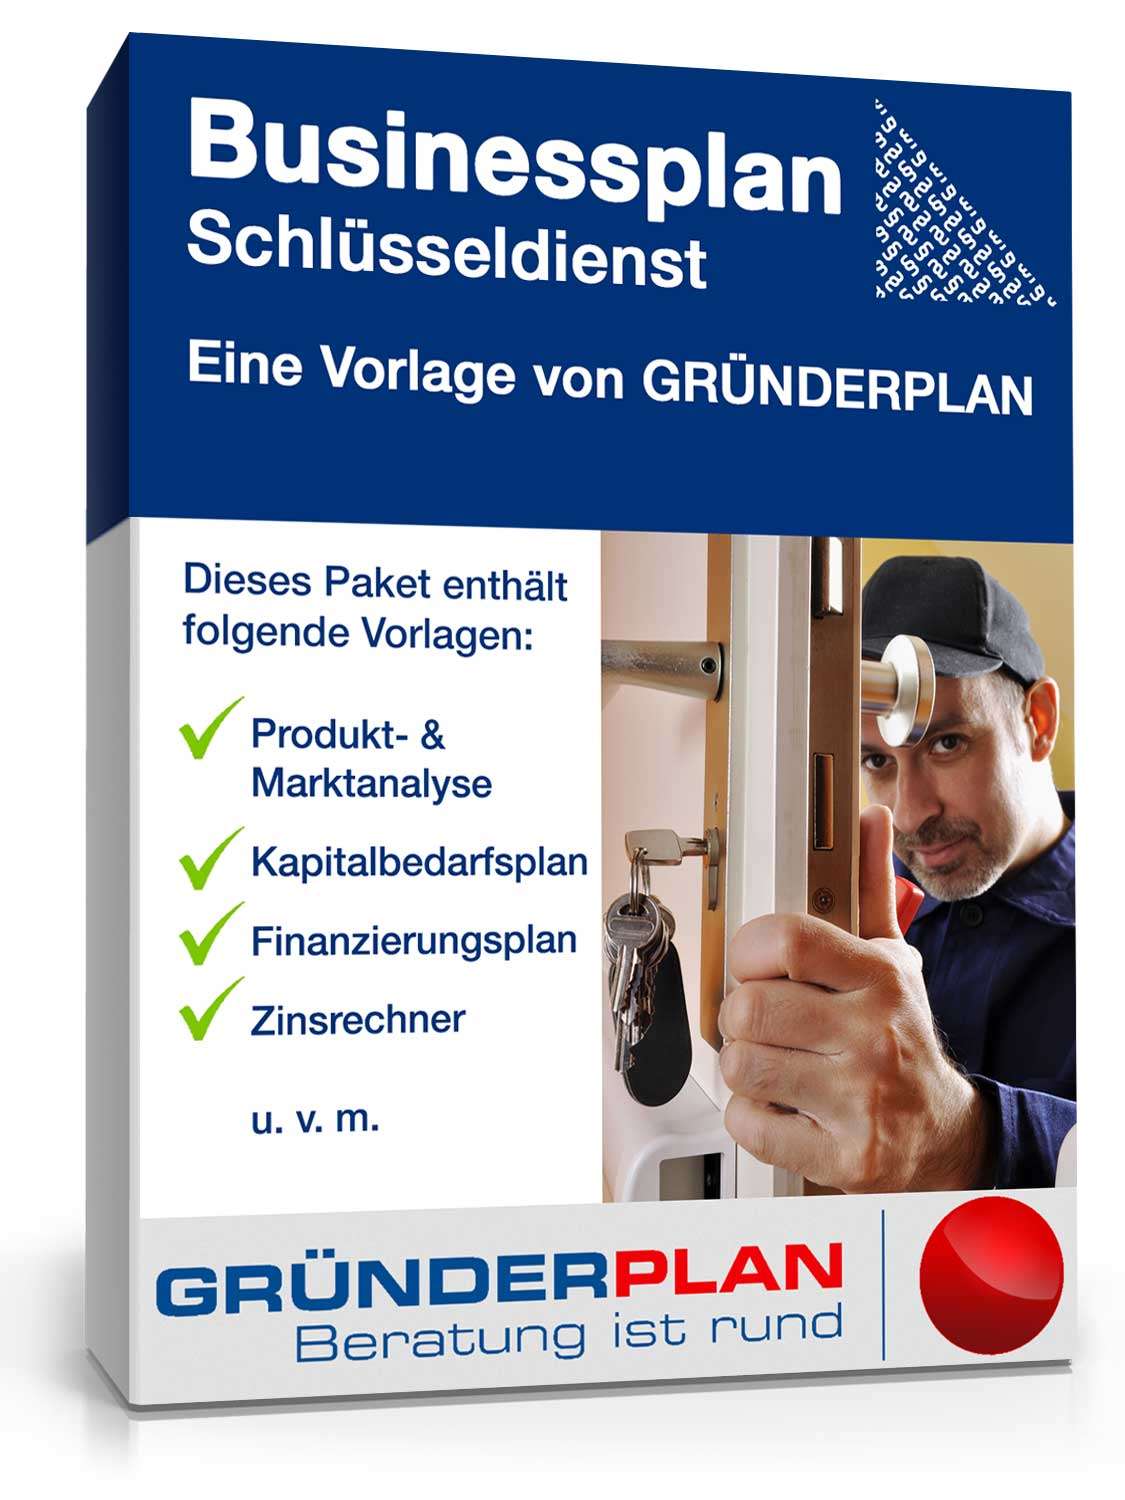 Hauptbild des Produkts: Businessplan Schlüsseldienst von Gründerplan